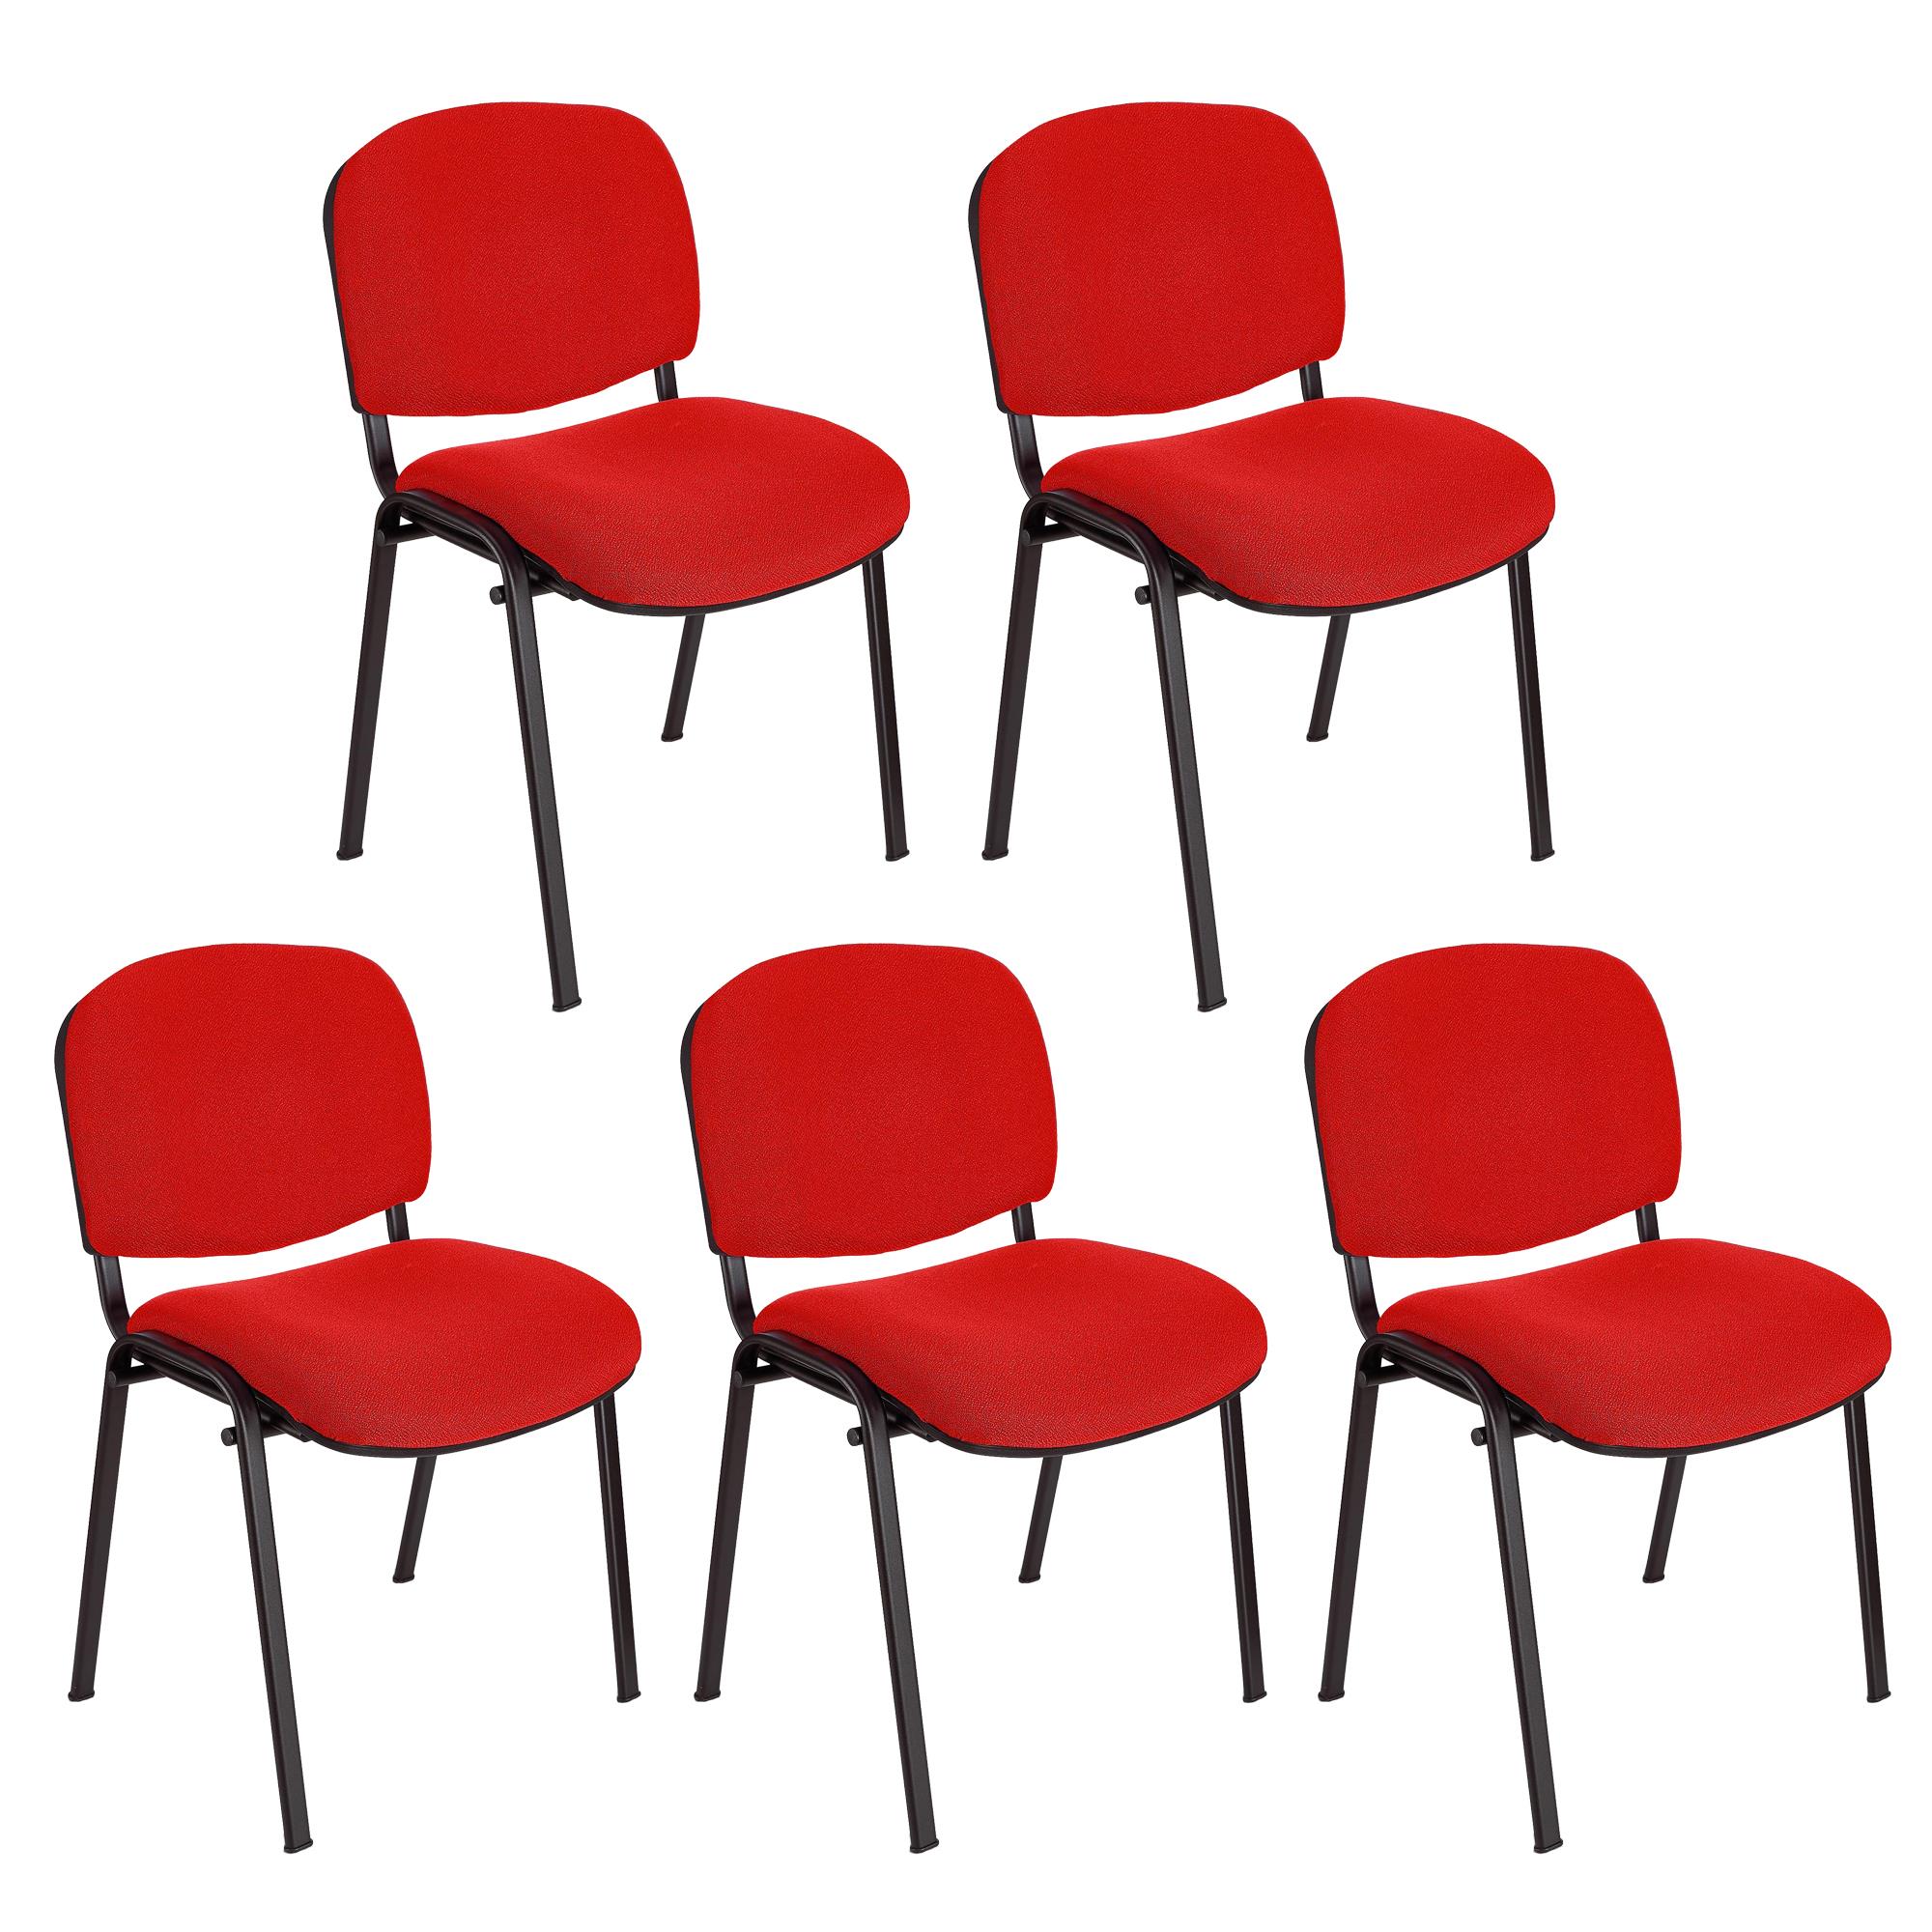 Lote 5 Cadeiras de Visita MOBY BASE, Confortável e Prática, Pernas Pretas, Cor Vermelho